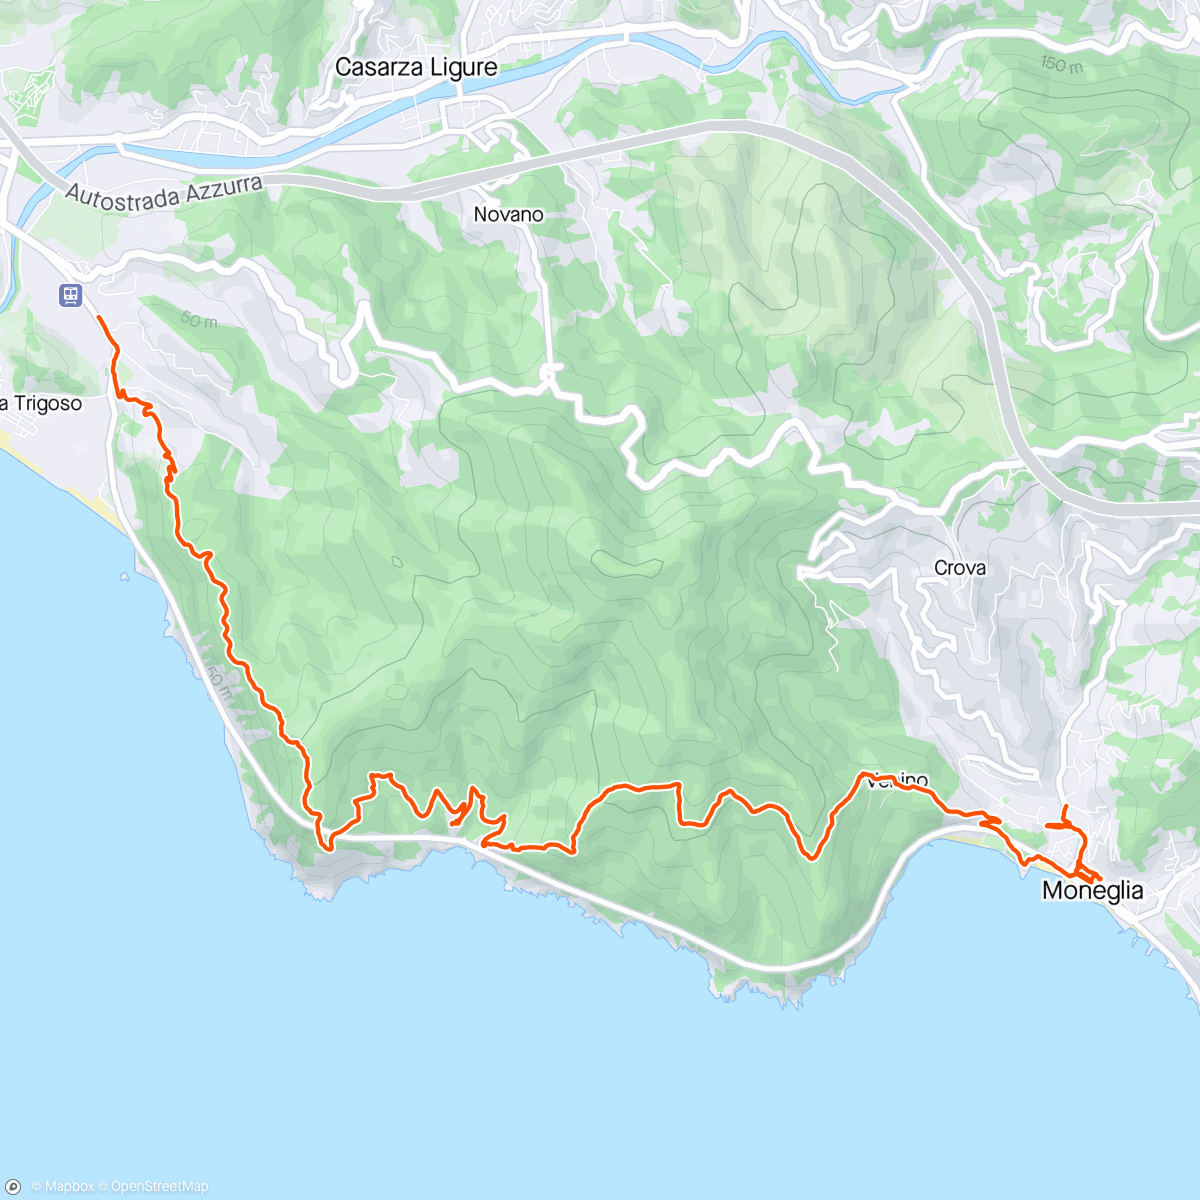 Mapa da atividade, Riva Trigoso to Moneglia.